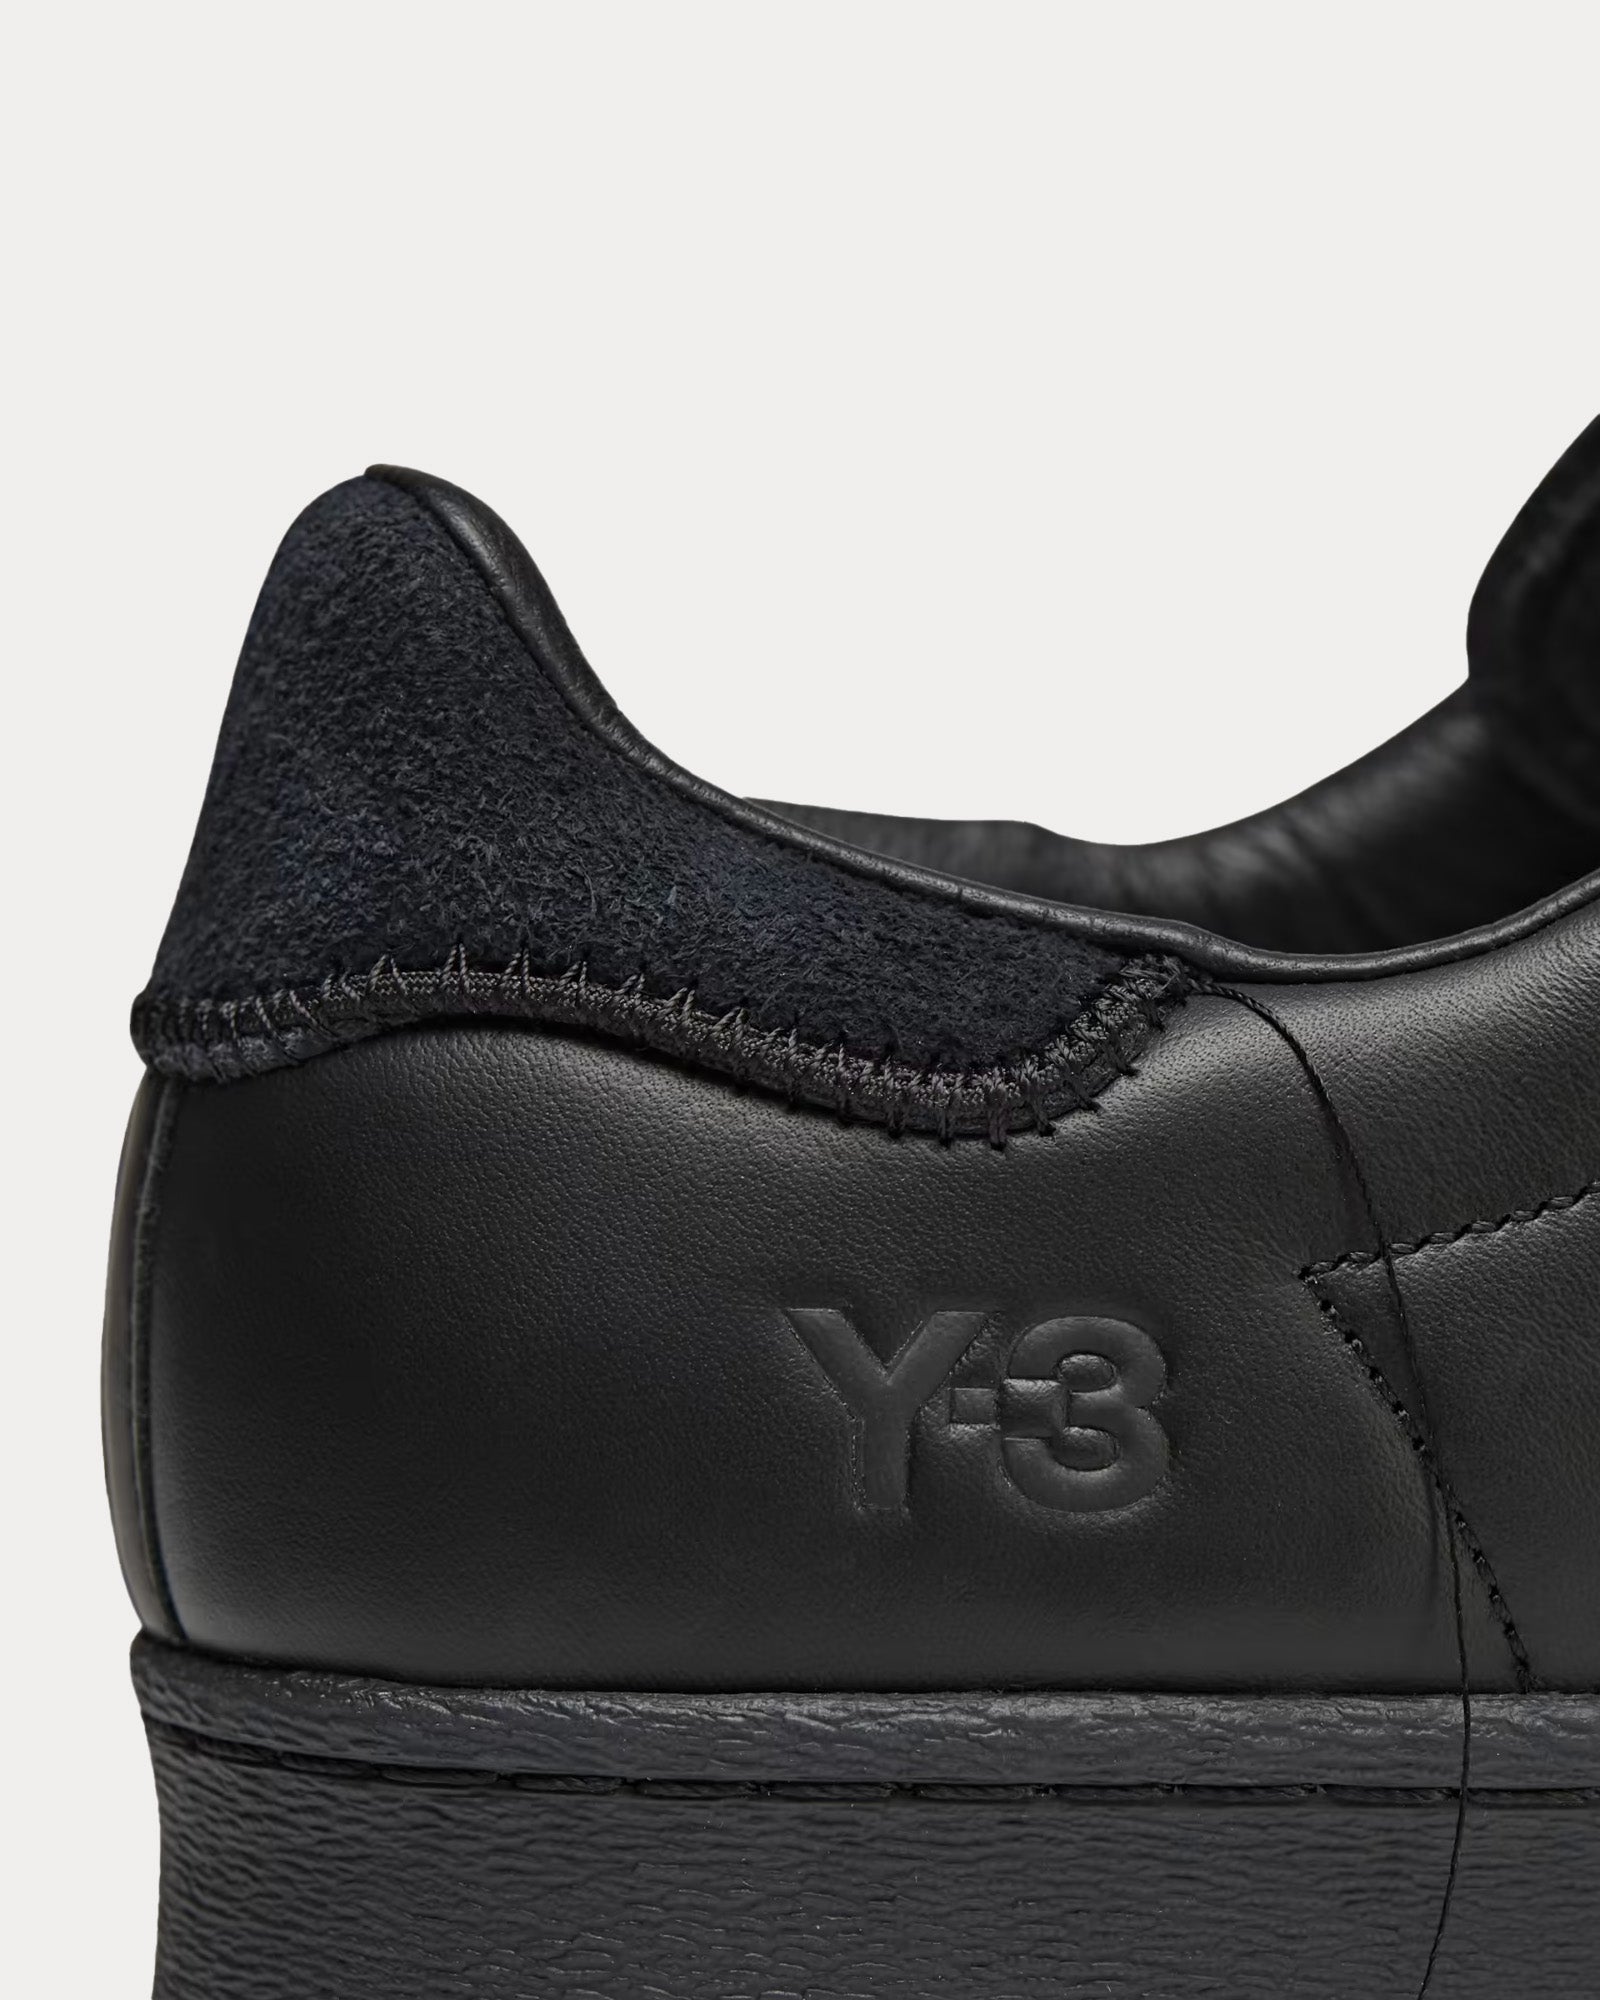 Y-3 - Superstar Black / Black / Black Low Top Sneakers